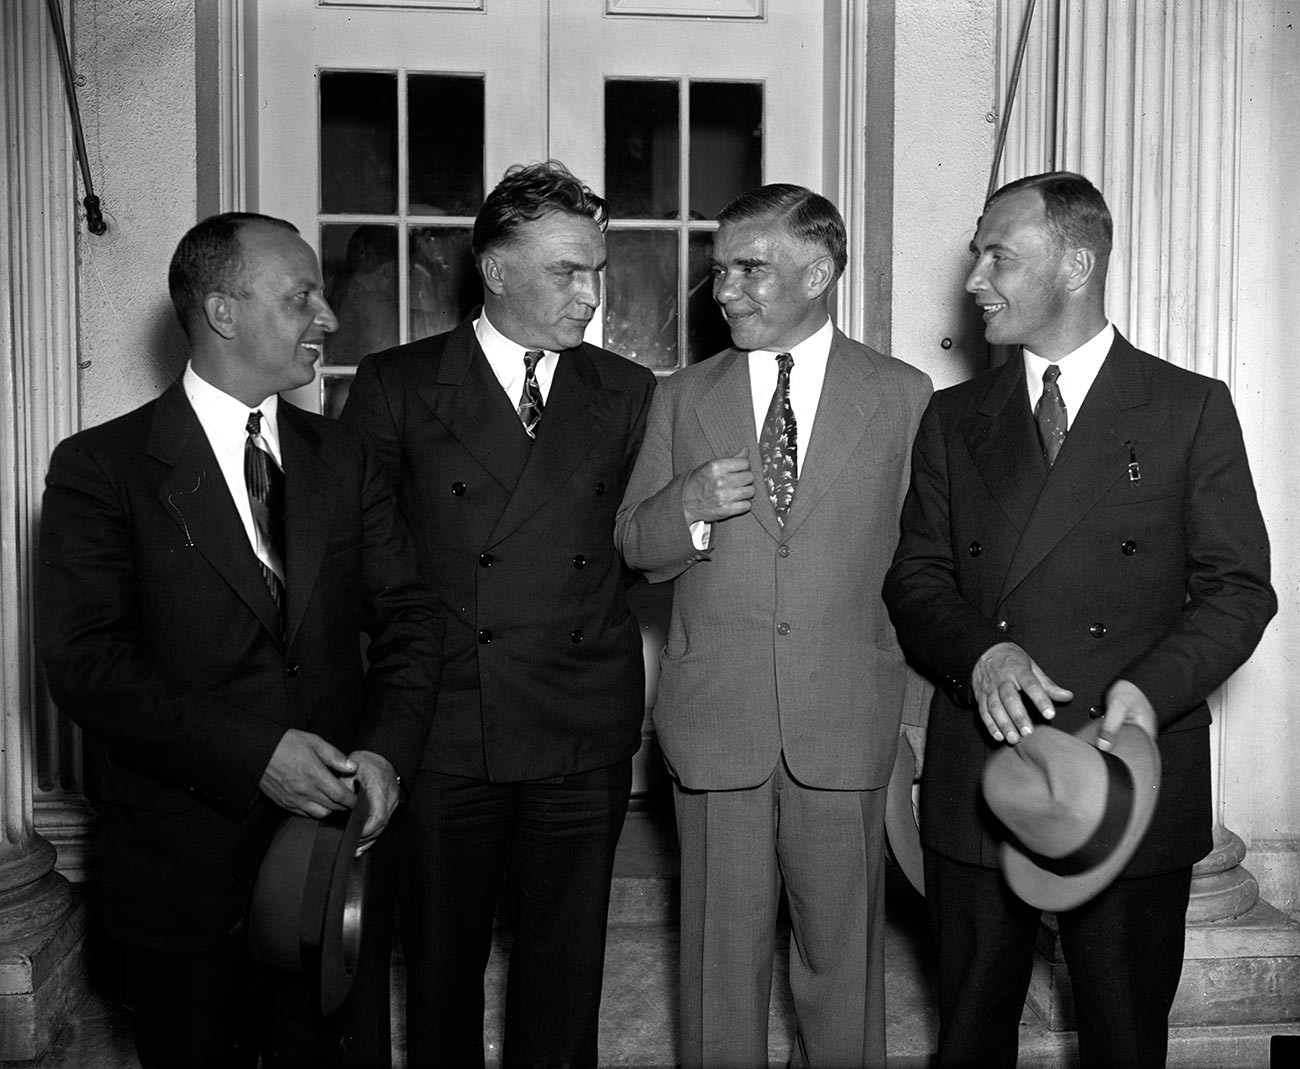 Бајдуков, Чкалов, полномошниот претставник на СССР Тројановски и Бељаков по приемот кај претседателот на САД Рузвелт во Белата куќа на 28 јуни 1937.

